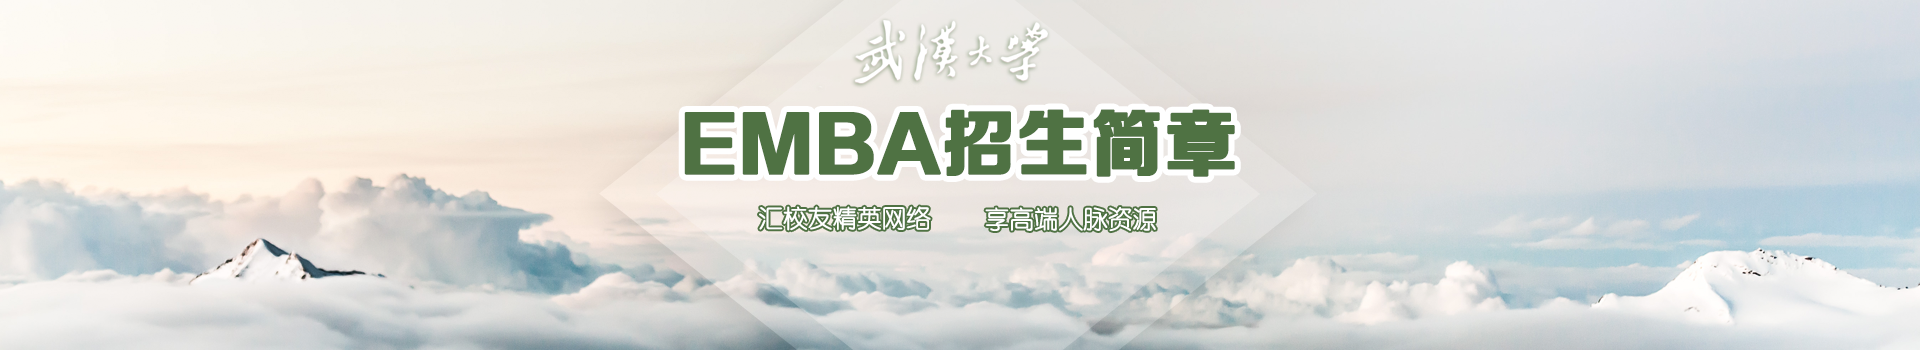 武汉大学经济与管理学院高级工商管理硕士EMBA招生简章